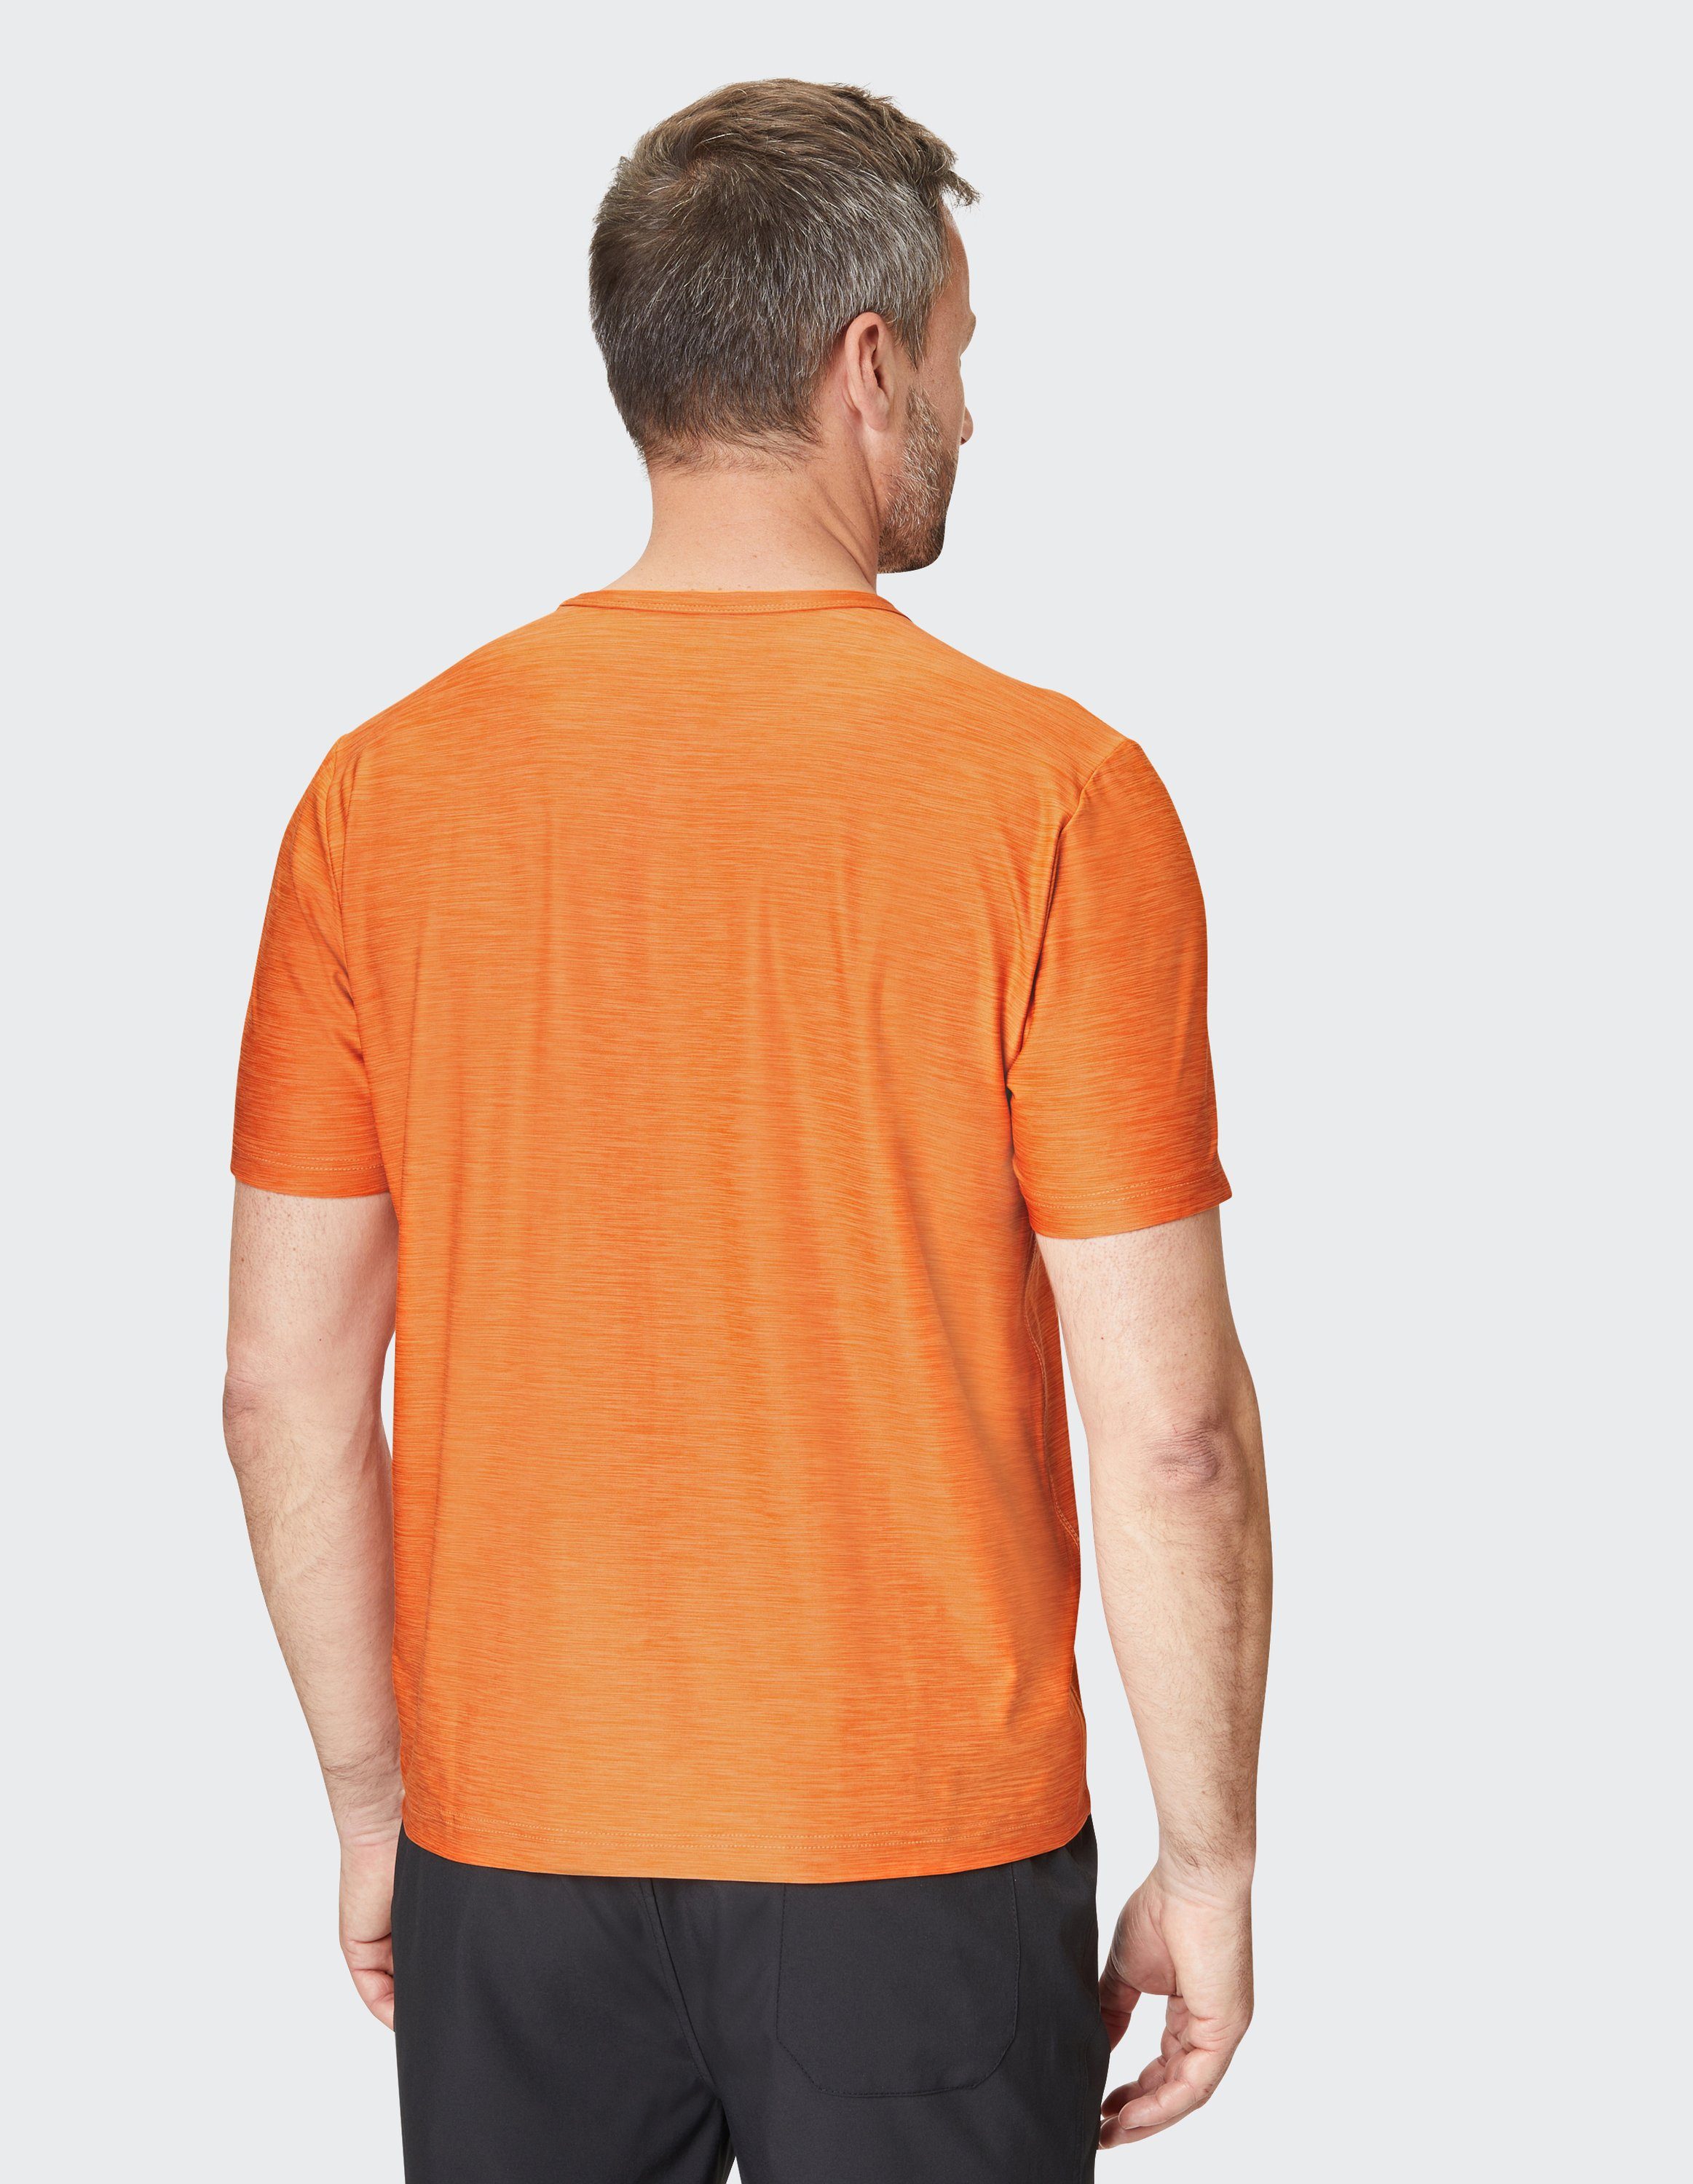 T-Shirt VITUS mel orange Joy bolt T-Shirt Sportswear